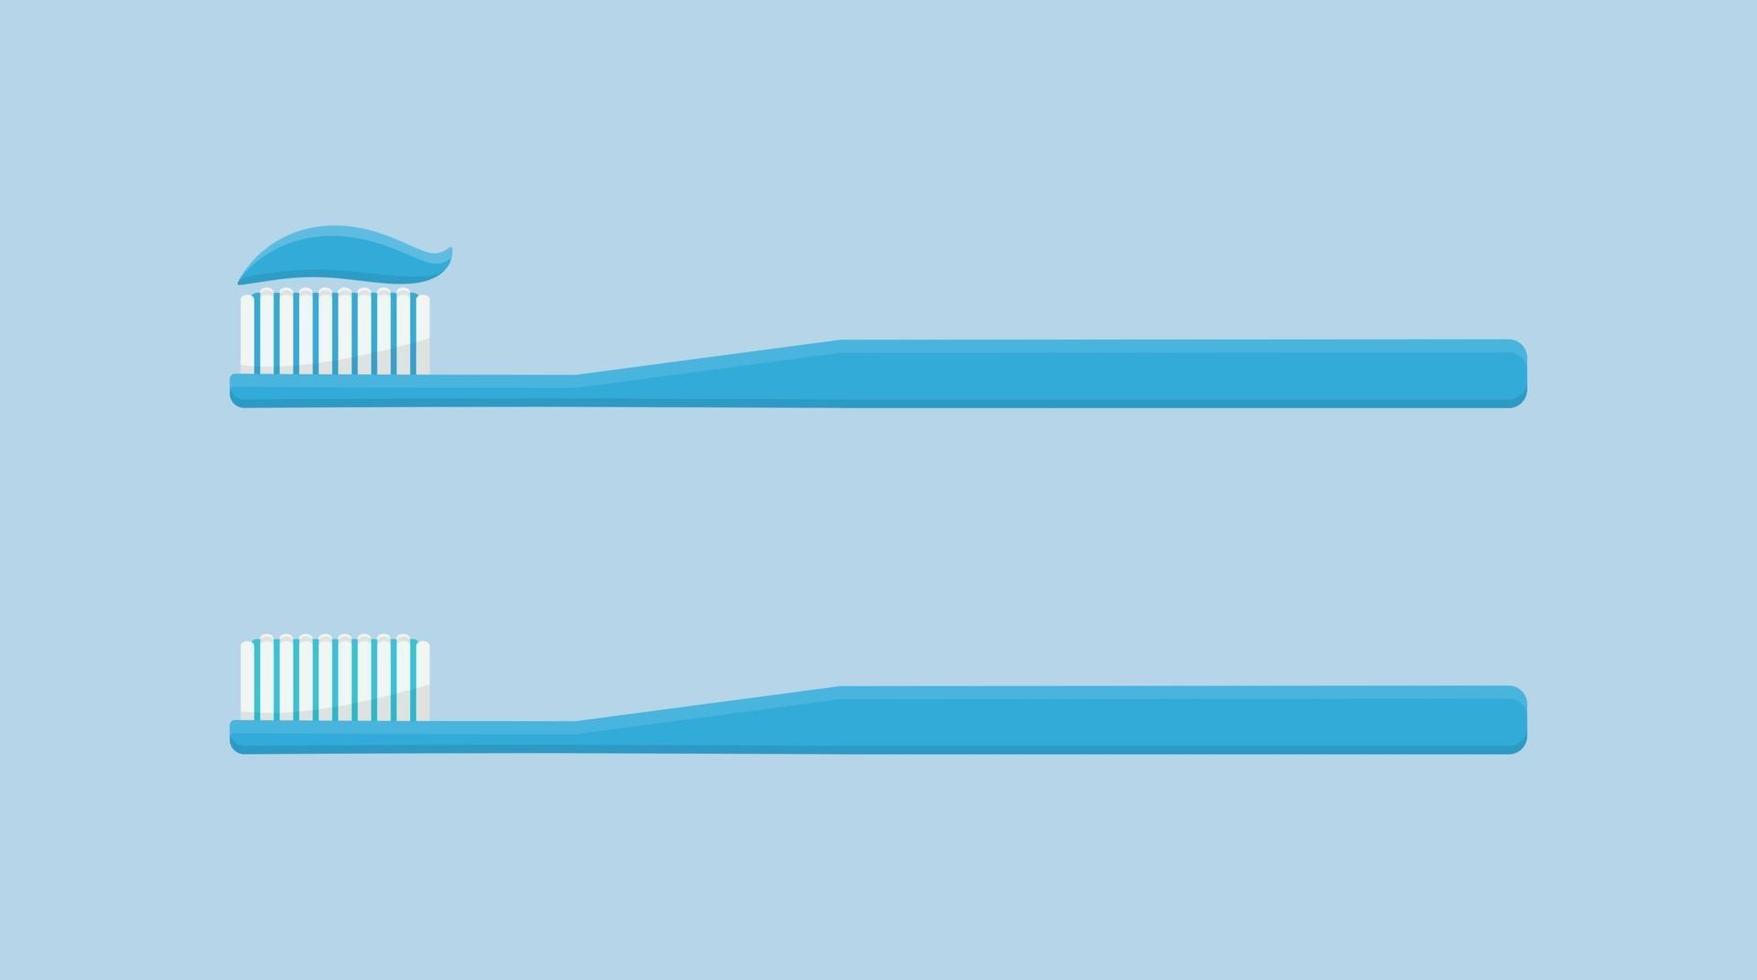 mond- en tandenverzorging tandenborstel geïsoleerd op blauwe achtergrond mondhygiëne vlakke stijl vectorillustratie vector